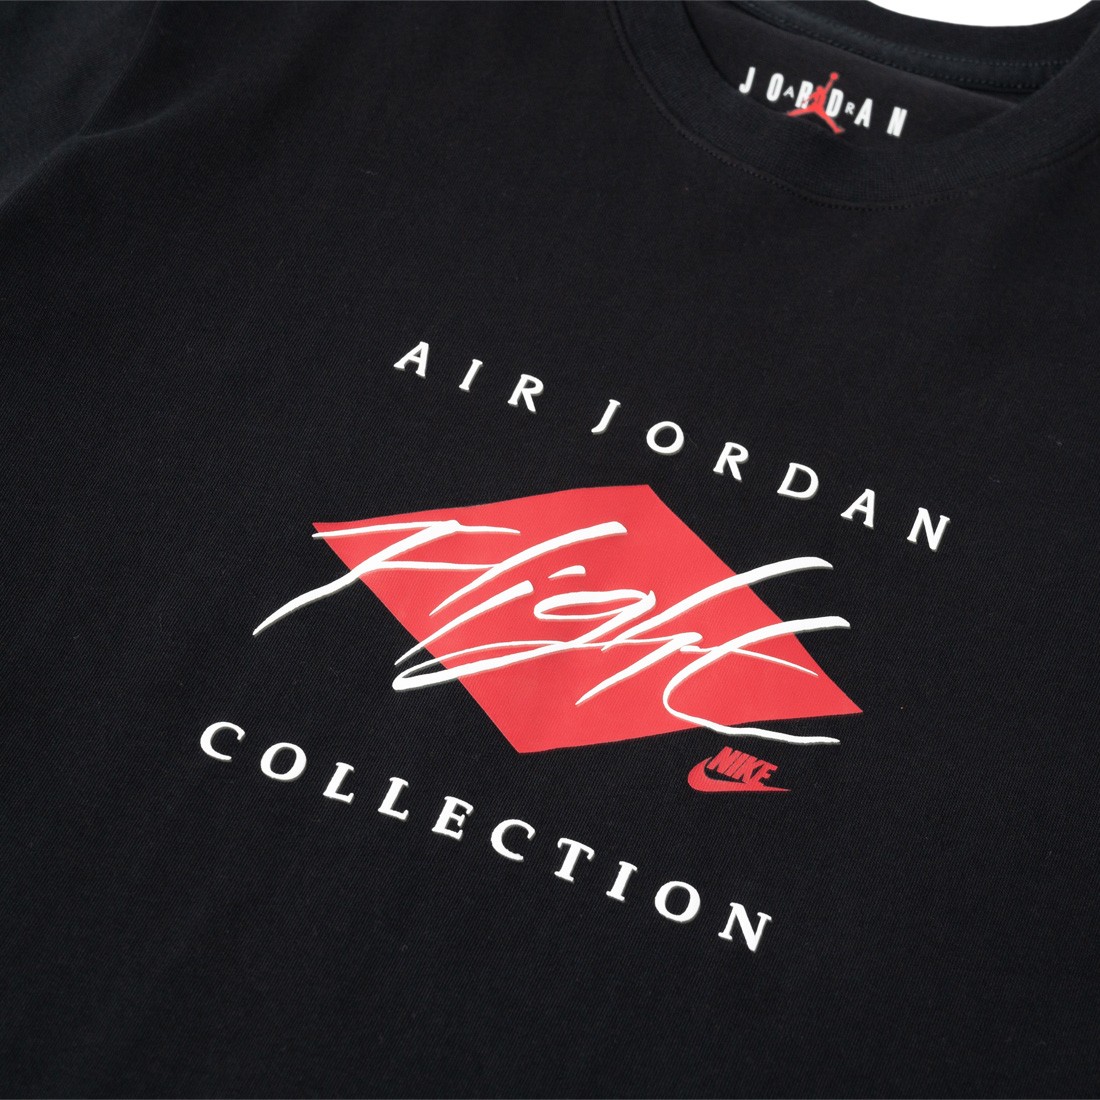 Nike Air Jordan Flight loose fit T-shirt in red